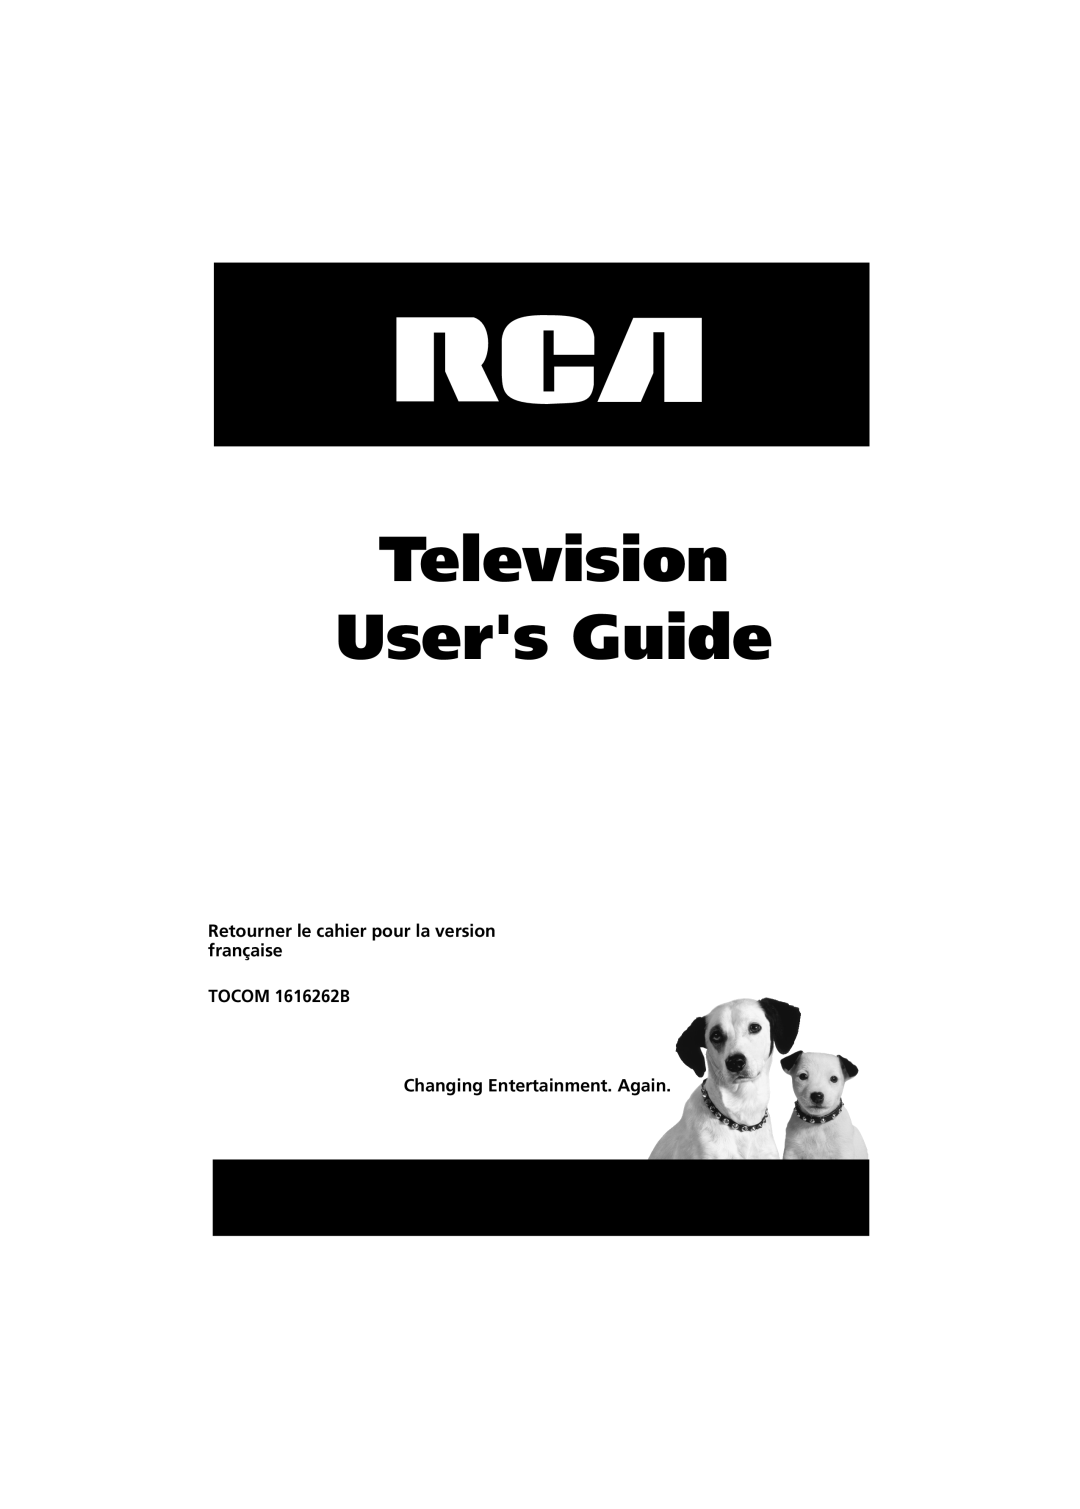 RCA 36V430T manual Television Users Guide, Retourner le cahier pour la version française TOCOM 1616262B 